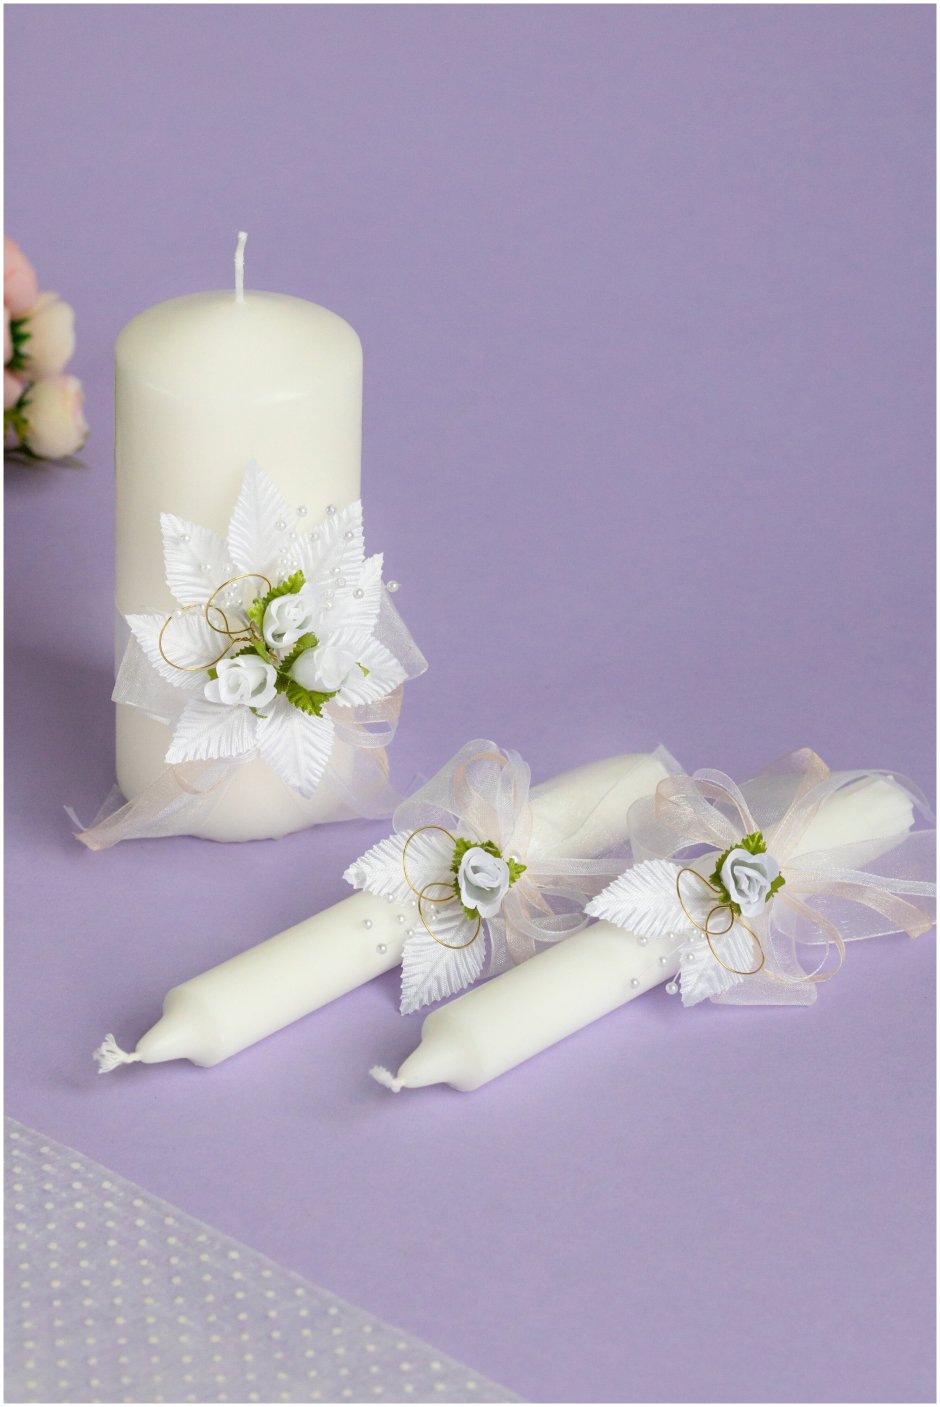 Свечи на свадьбу